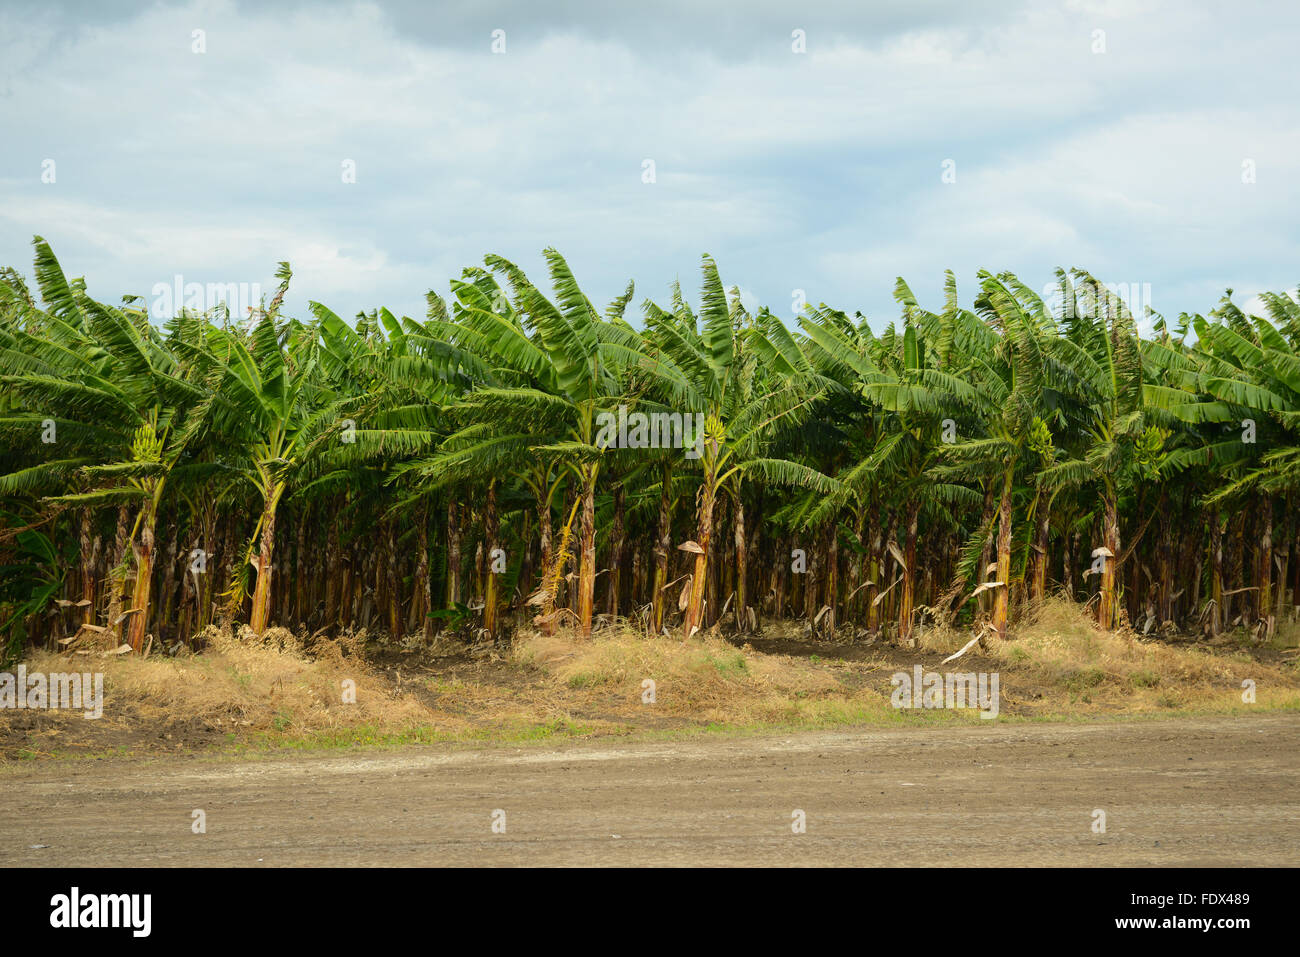 Piantagioni di banane sono una delle tante attività agricole nell'isola. PUERTO RICO - isola dei Caraibi. Territorio statunitense. Foto Stock